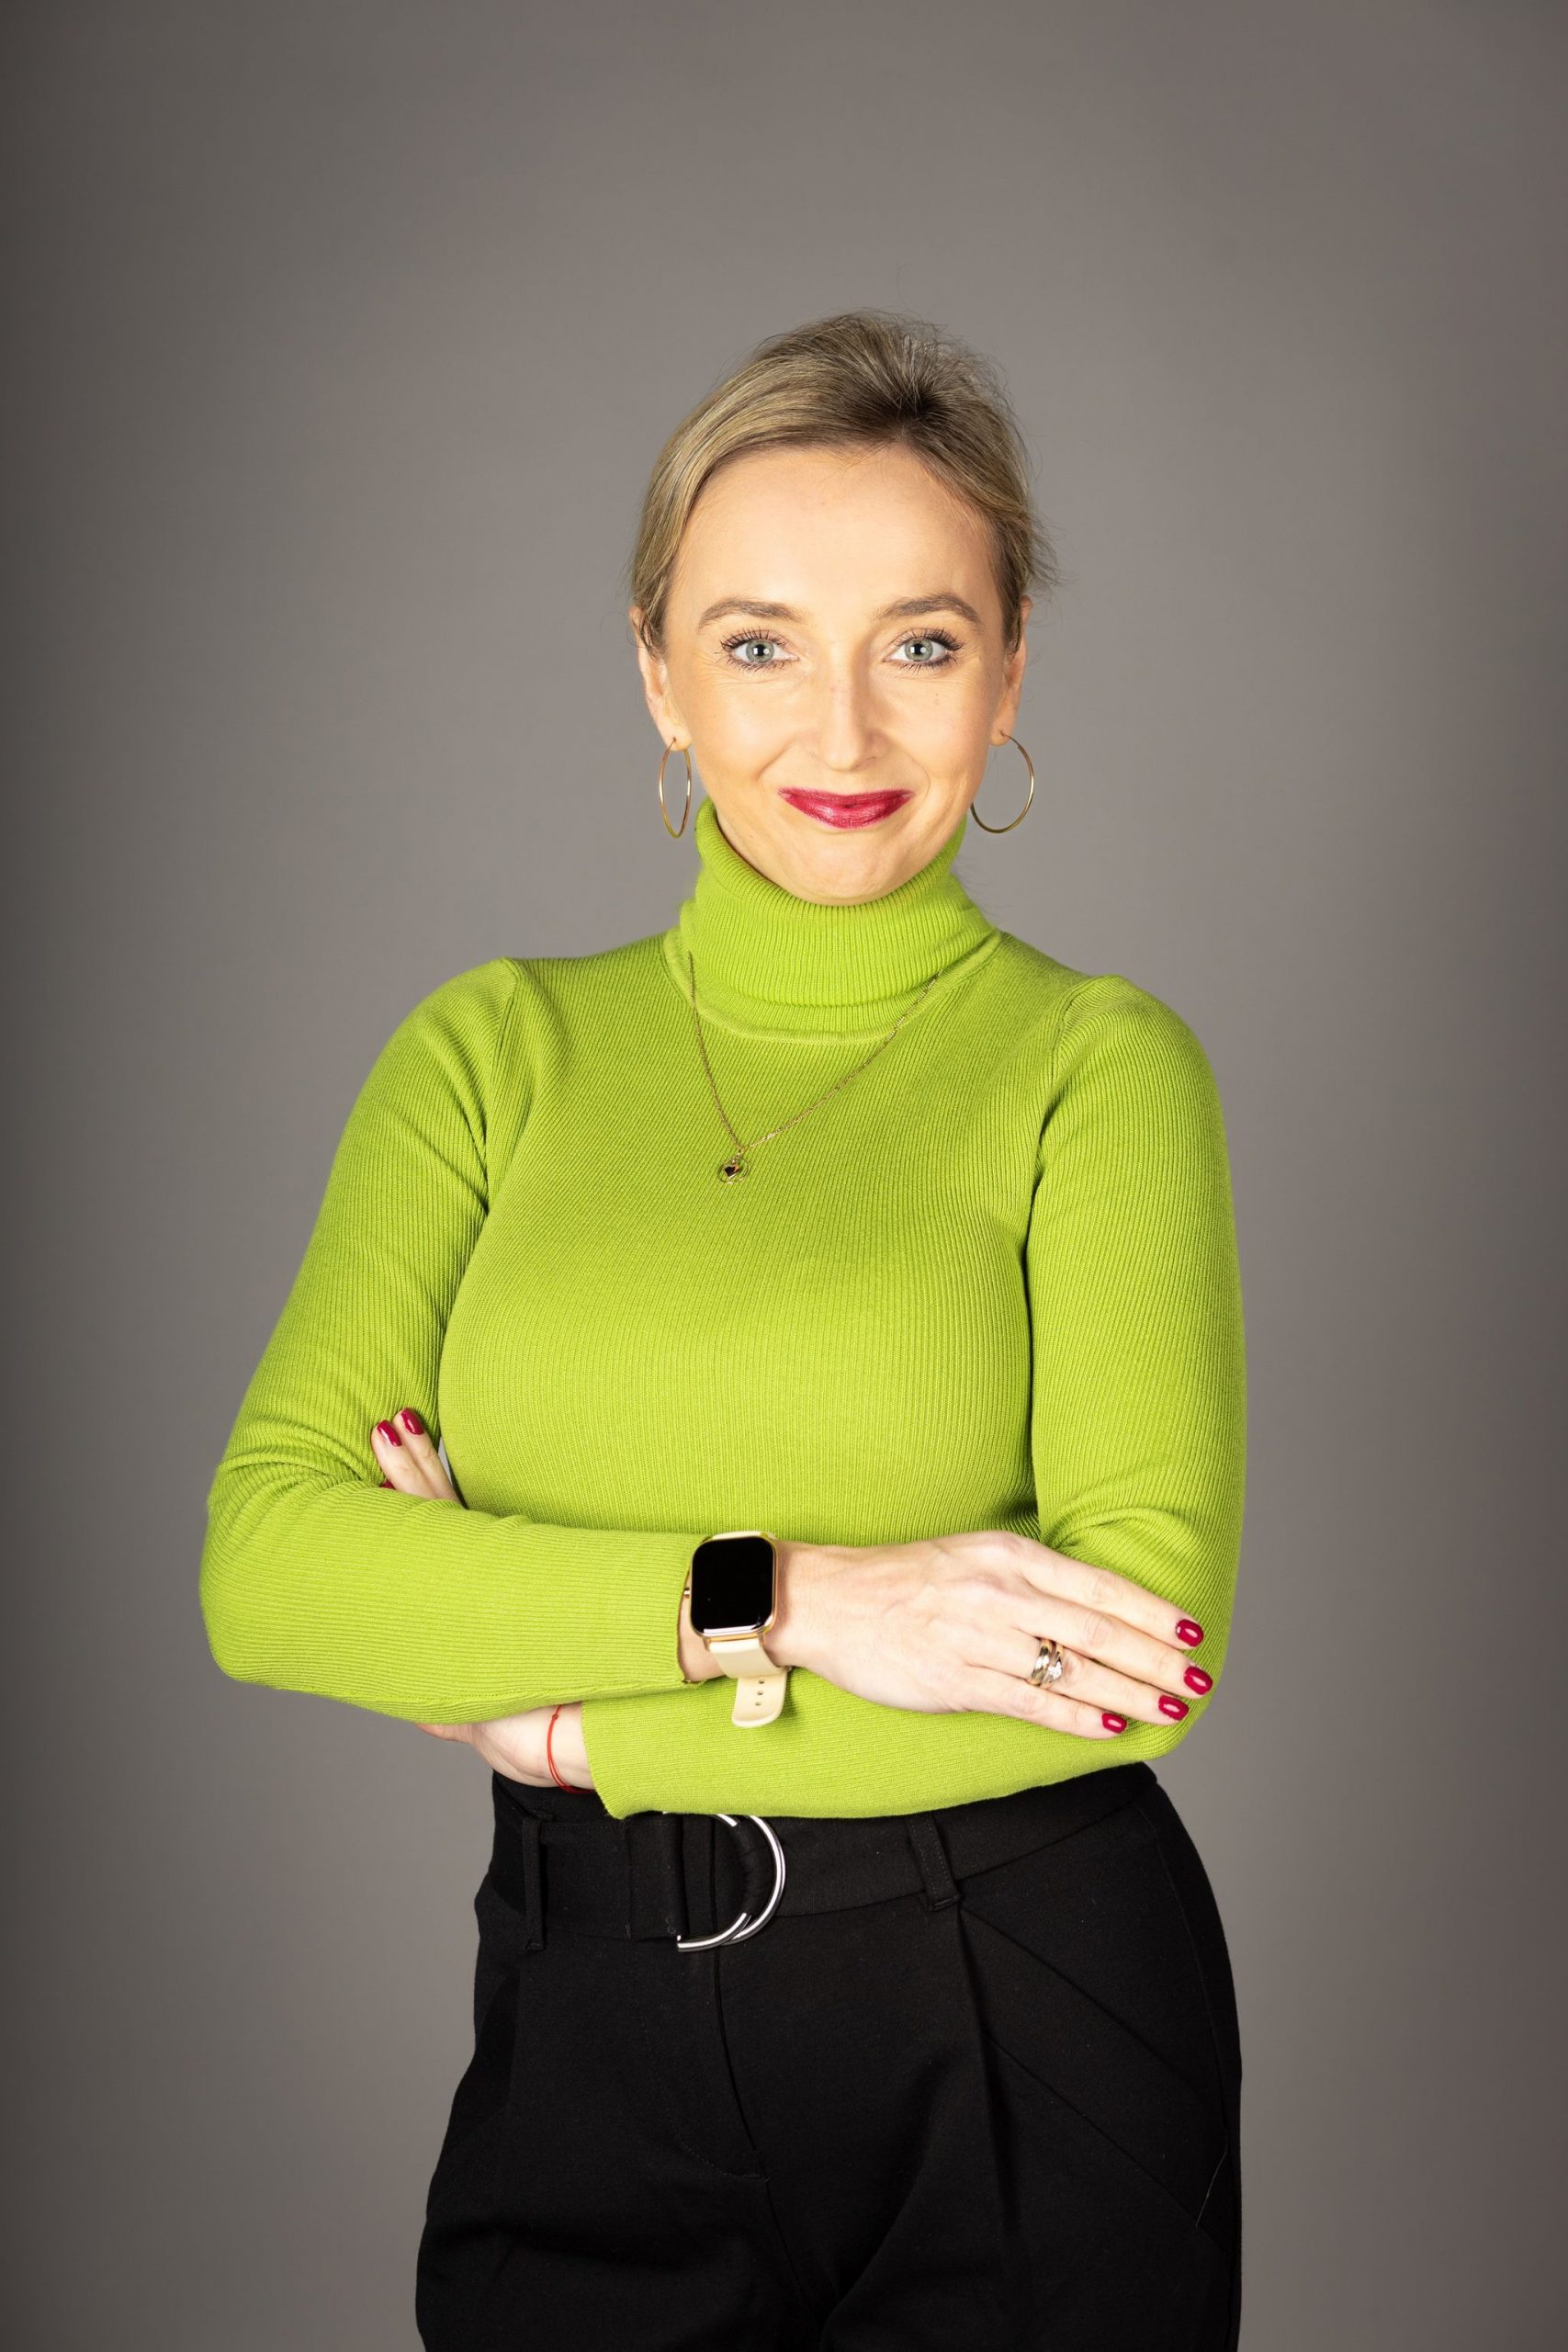 Katarzyna Ostasz